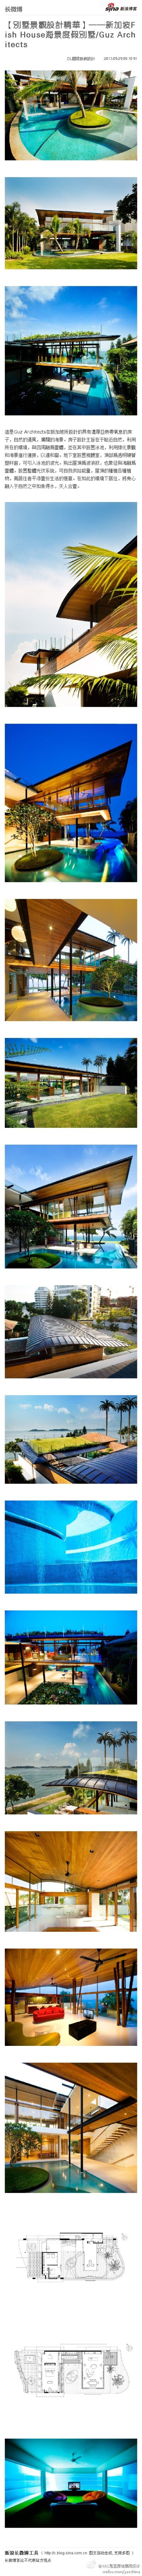 【別墅景觀設計精華】——新加坡Fish House海景度假別墅/Guz Architects： 這是Guz Architects在新加坡所設計的具有濃厚亞熱帶氣息的房子，自然的通風，廣闊的海景。房子設計主旨在于貼近自然... http://t.cn/zH5jm6…